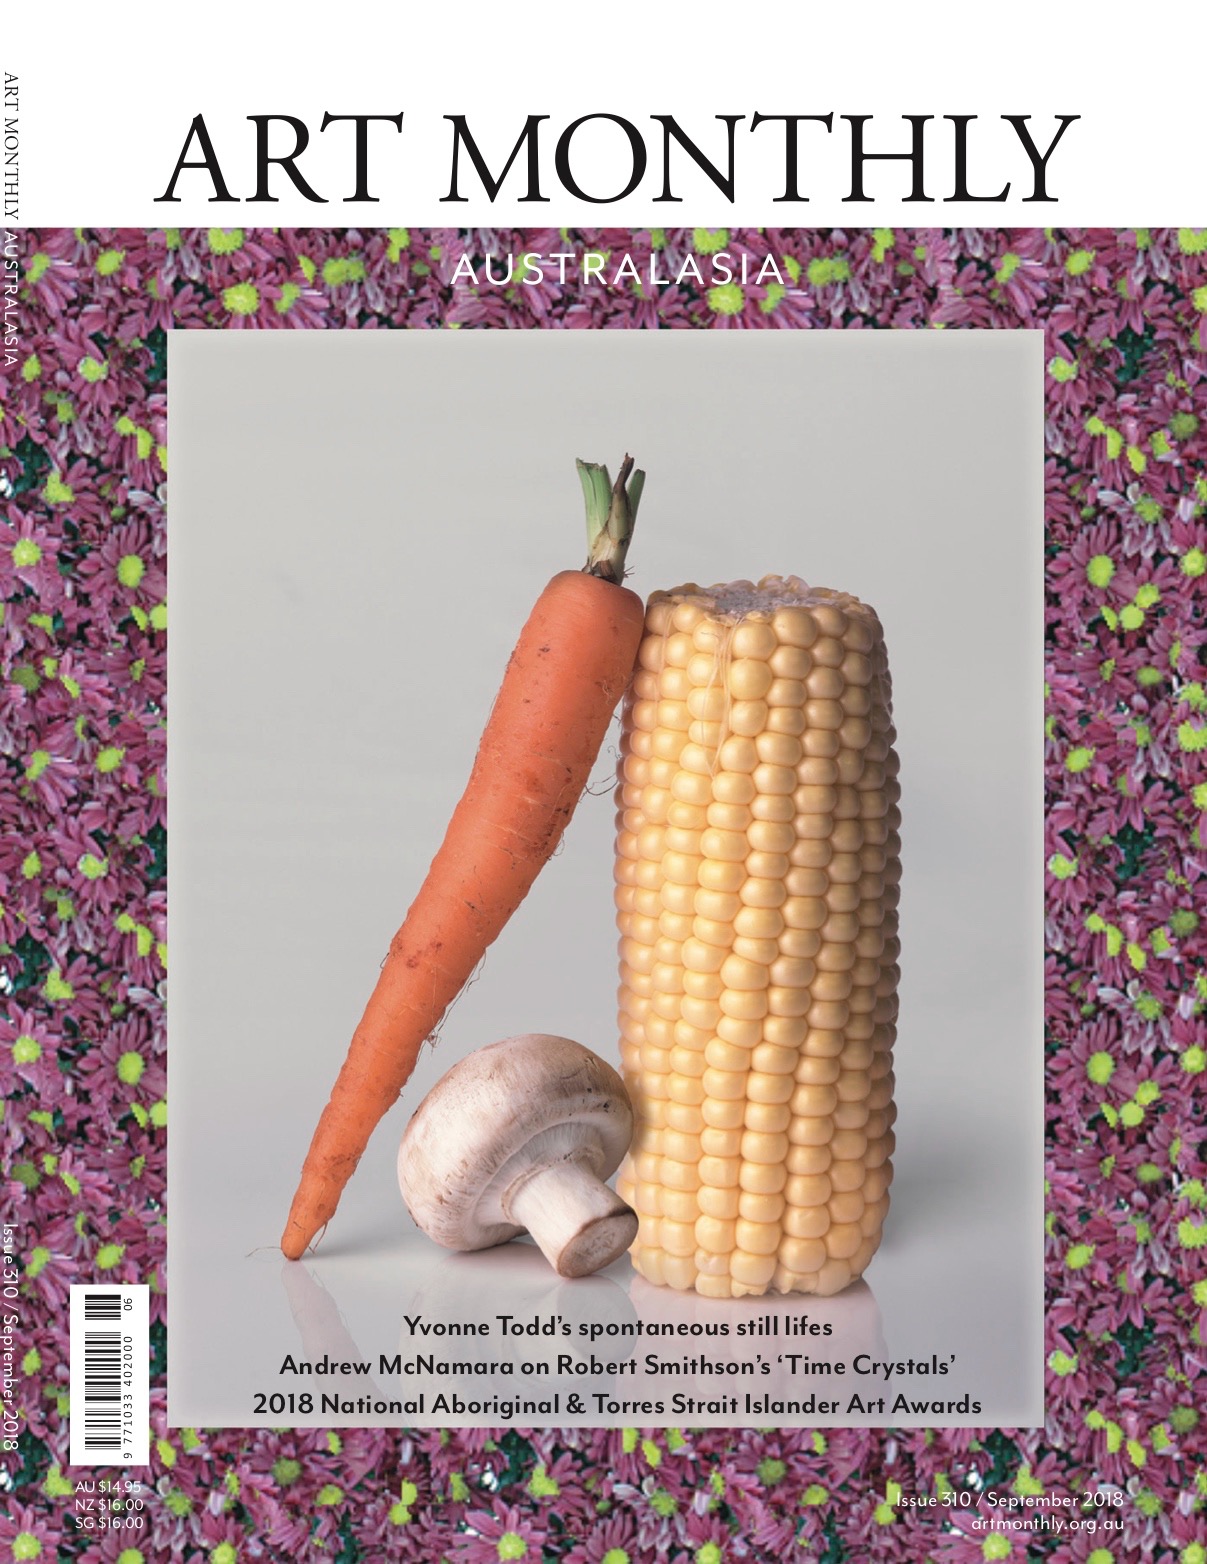 Issue 310 September 2018